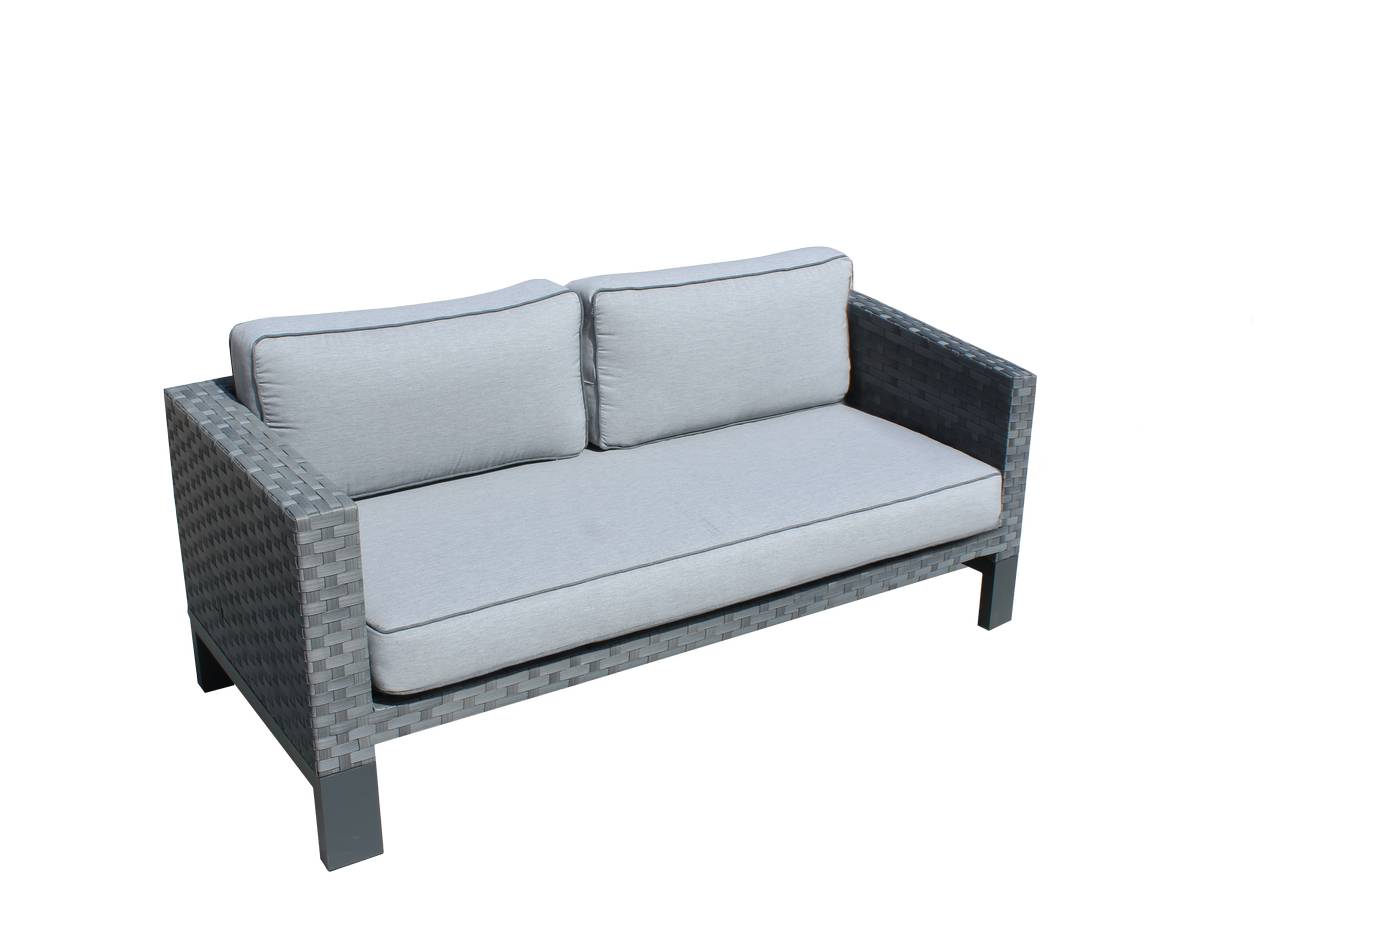 Sofá 2 plazas lujo, con cojines desenfundables. Hecho de aluminio y médula sintética color blanco o antracita.